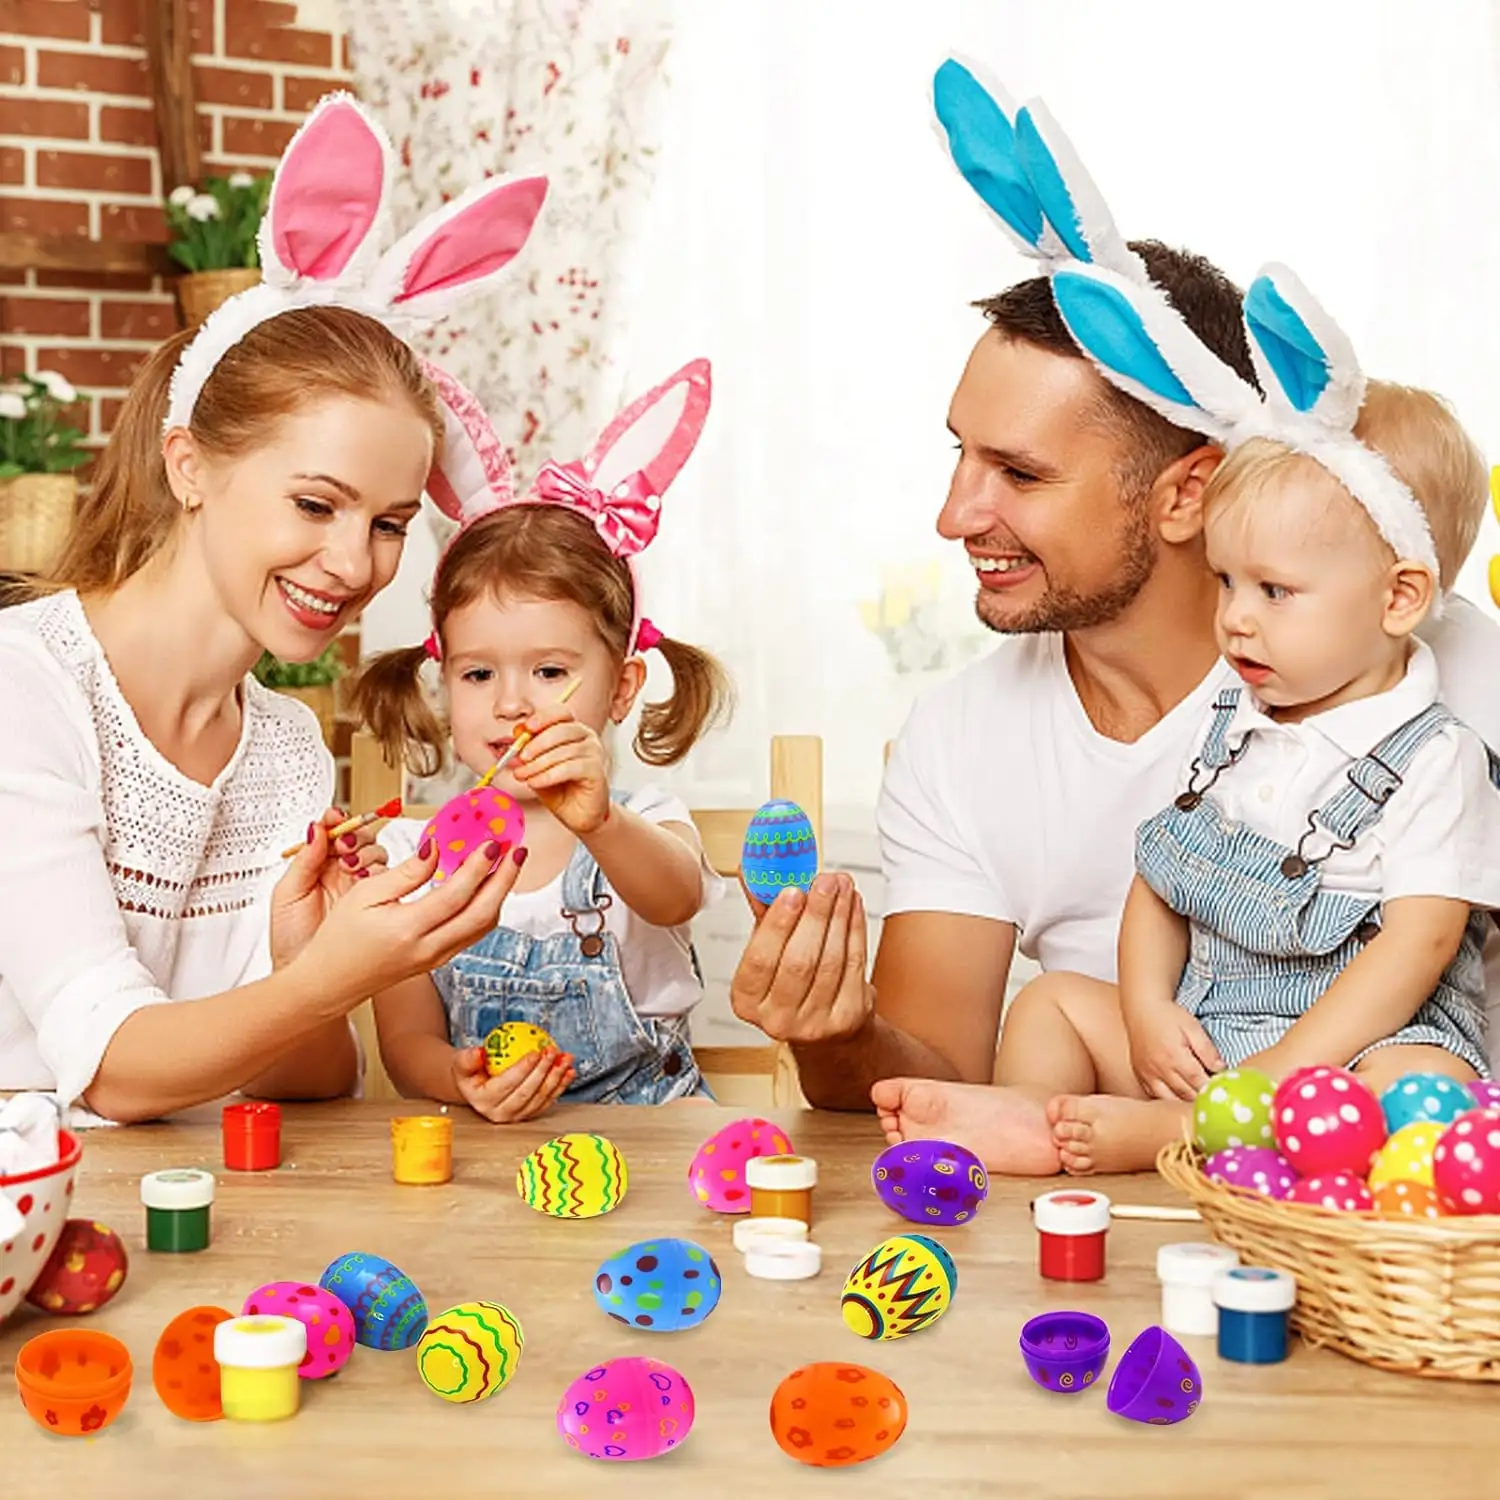 Colorido Festival de Pascua Día de vacaciones Suministros de decoración para fiestas Juguetes para niños Huevos de Pascua pequeños vacíos Juegos de cáscara de huevo pintada